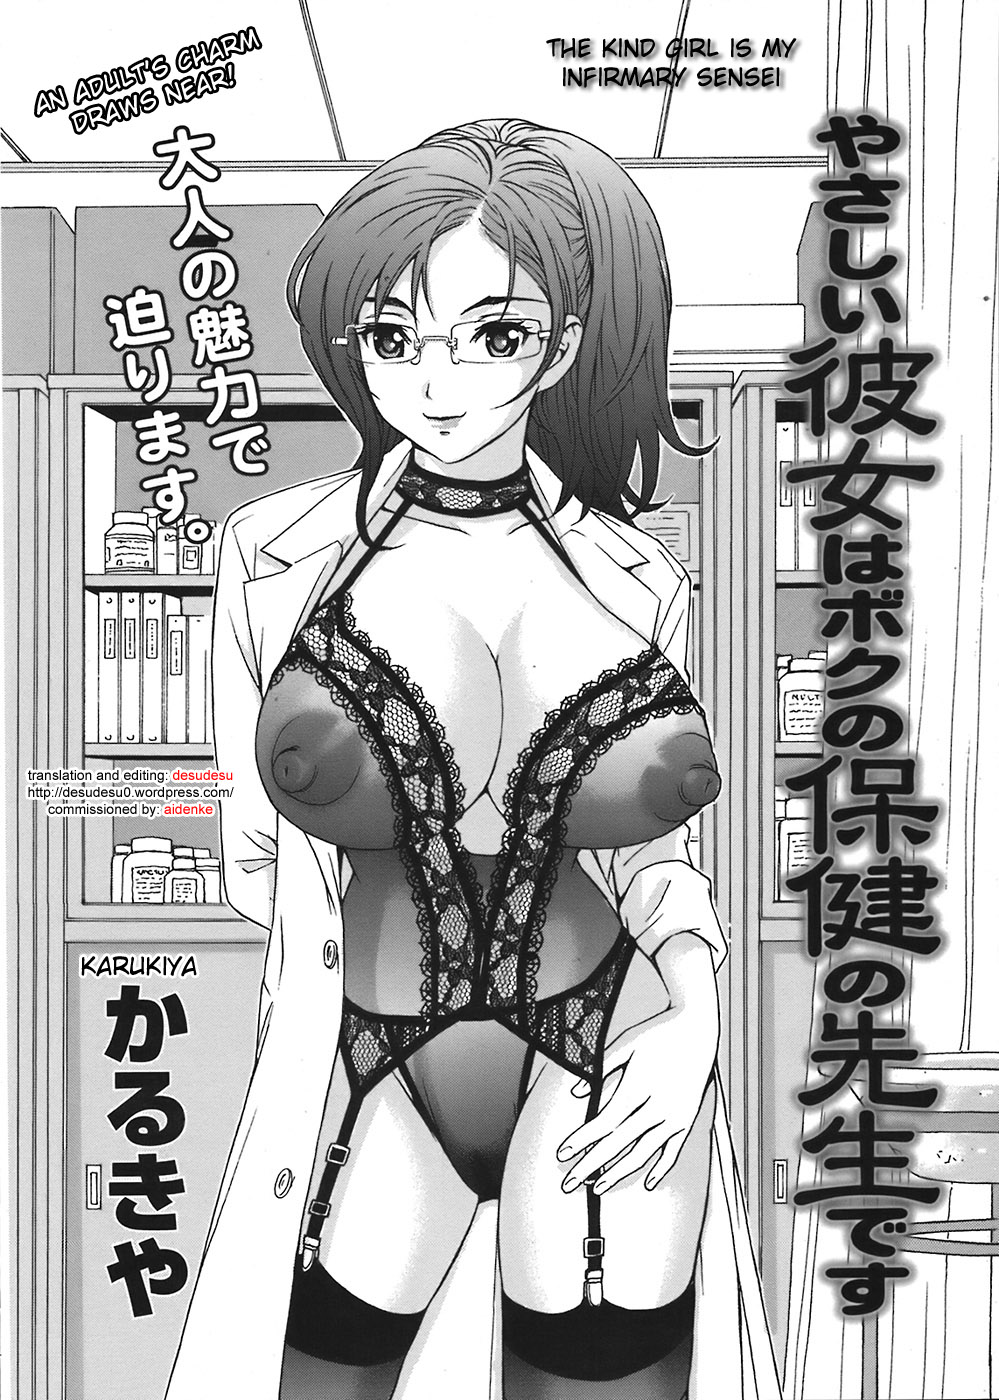 [Karukiya] Yasashii Kanojo wa Boku no Hoken no Sensei desu - The Kind Girl Is My Infirmary Sensei Hentai Comics